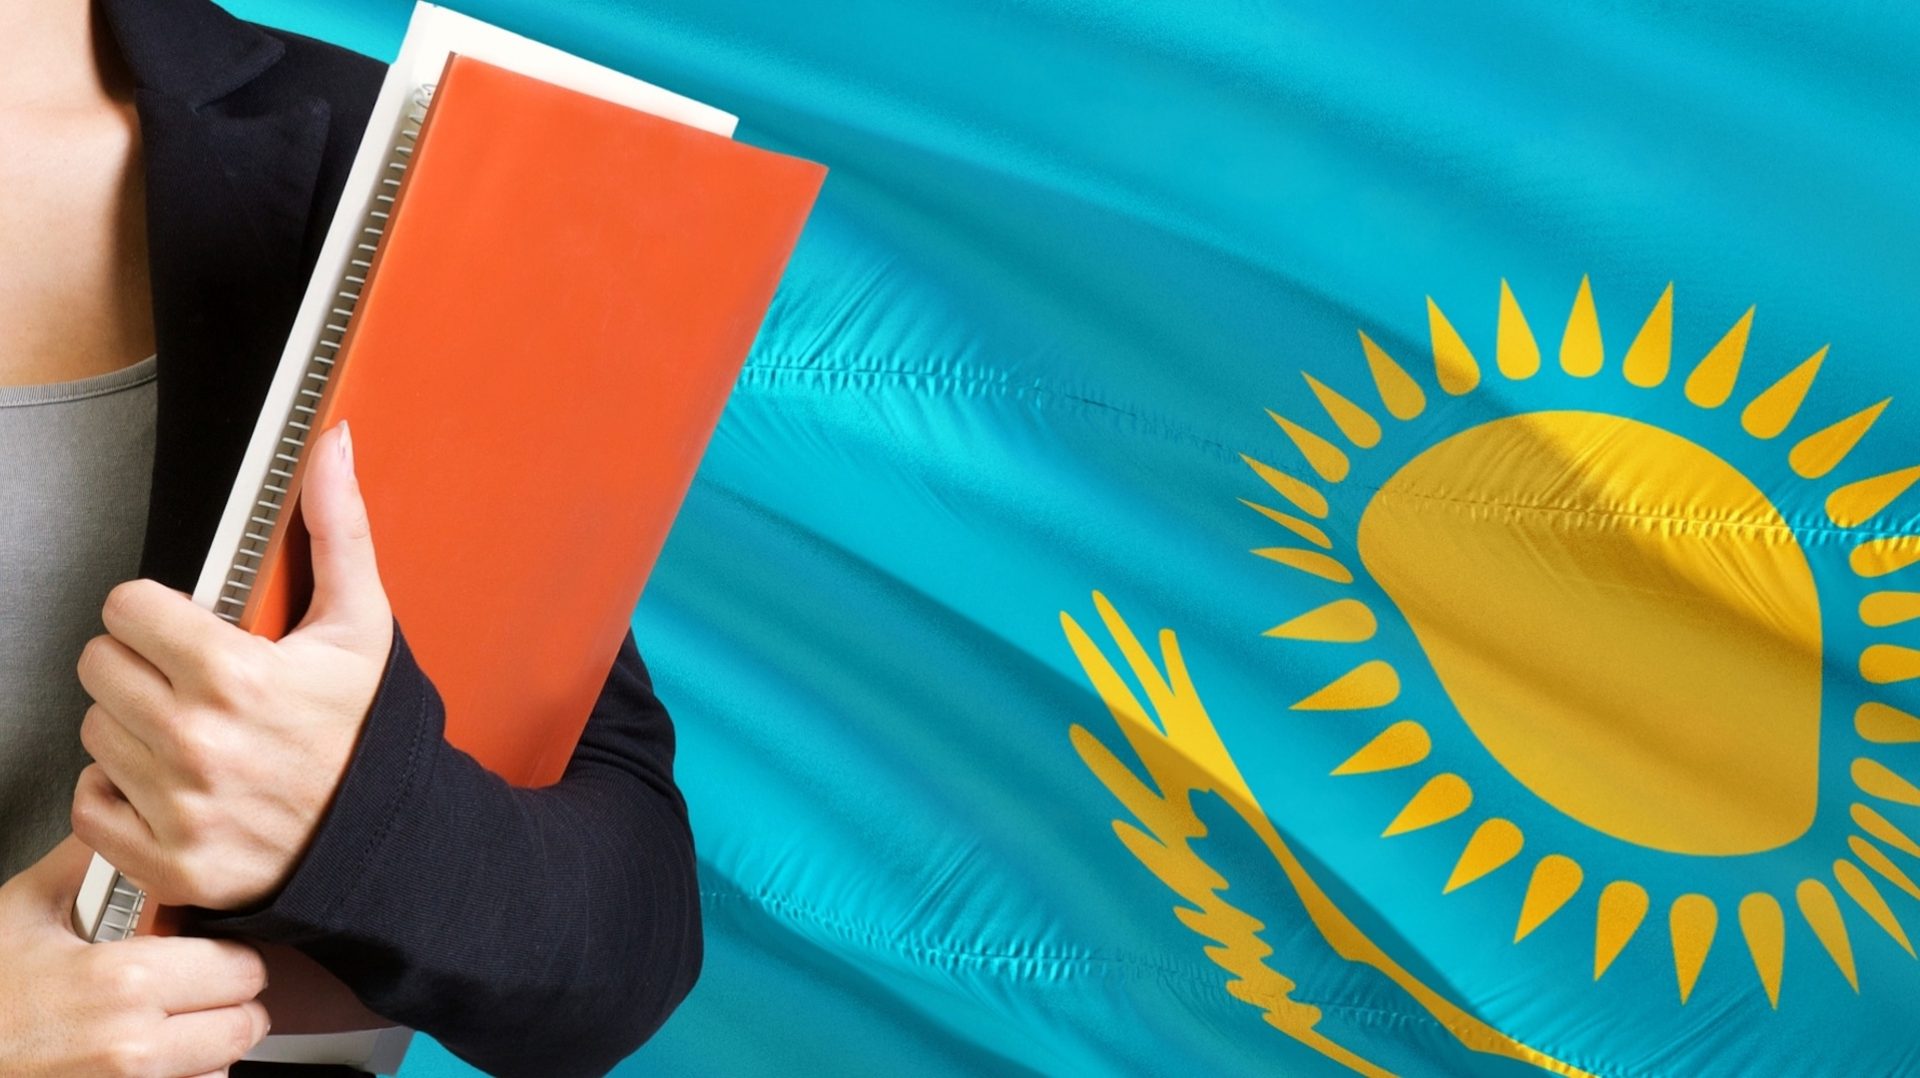 kazahstan gotovit novyj dokument dlya uskoreniya razvitiya i rasprostraneniya kazahskogo yazyka